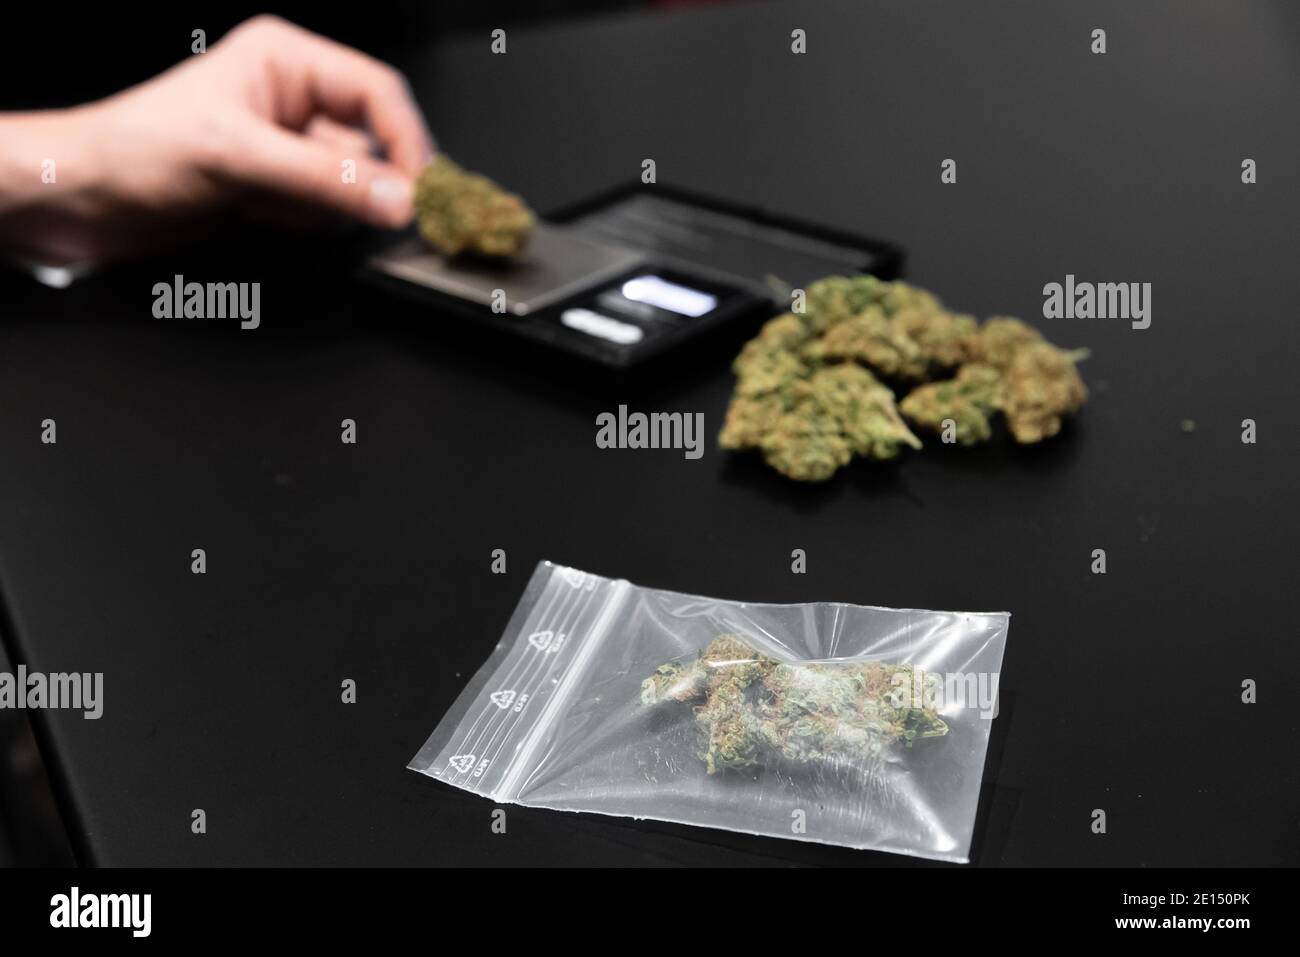 https://c8.alamy.com/comp/2E150PK/cannabis-buds-on-a-scale-and-packed-2E150PK.jpg